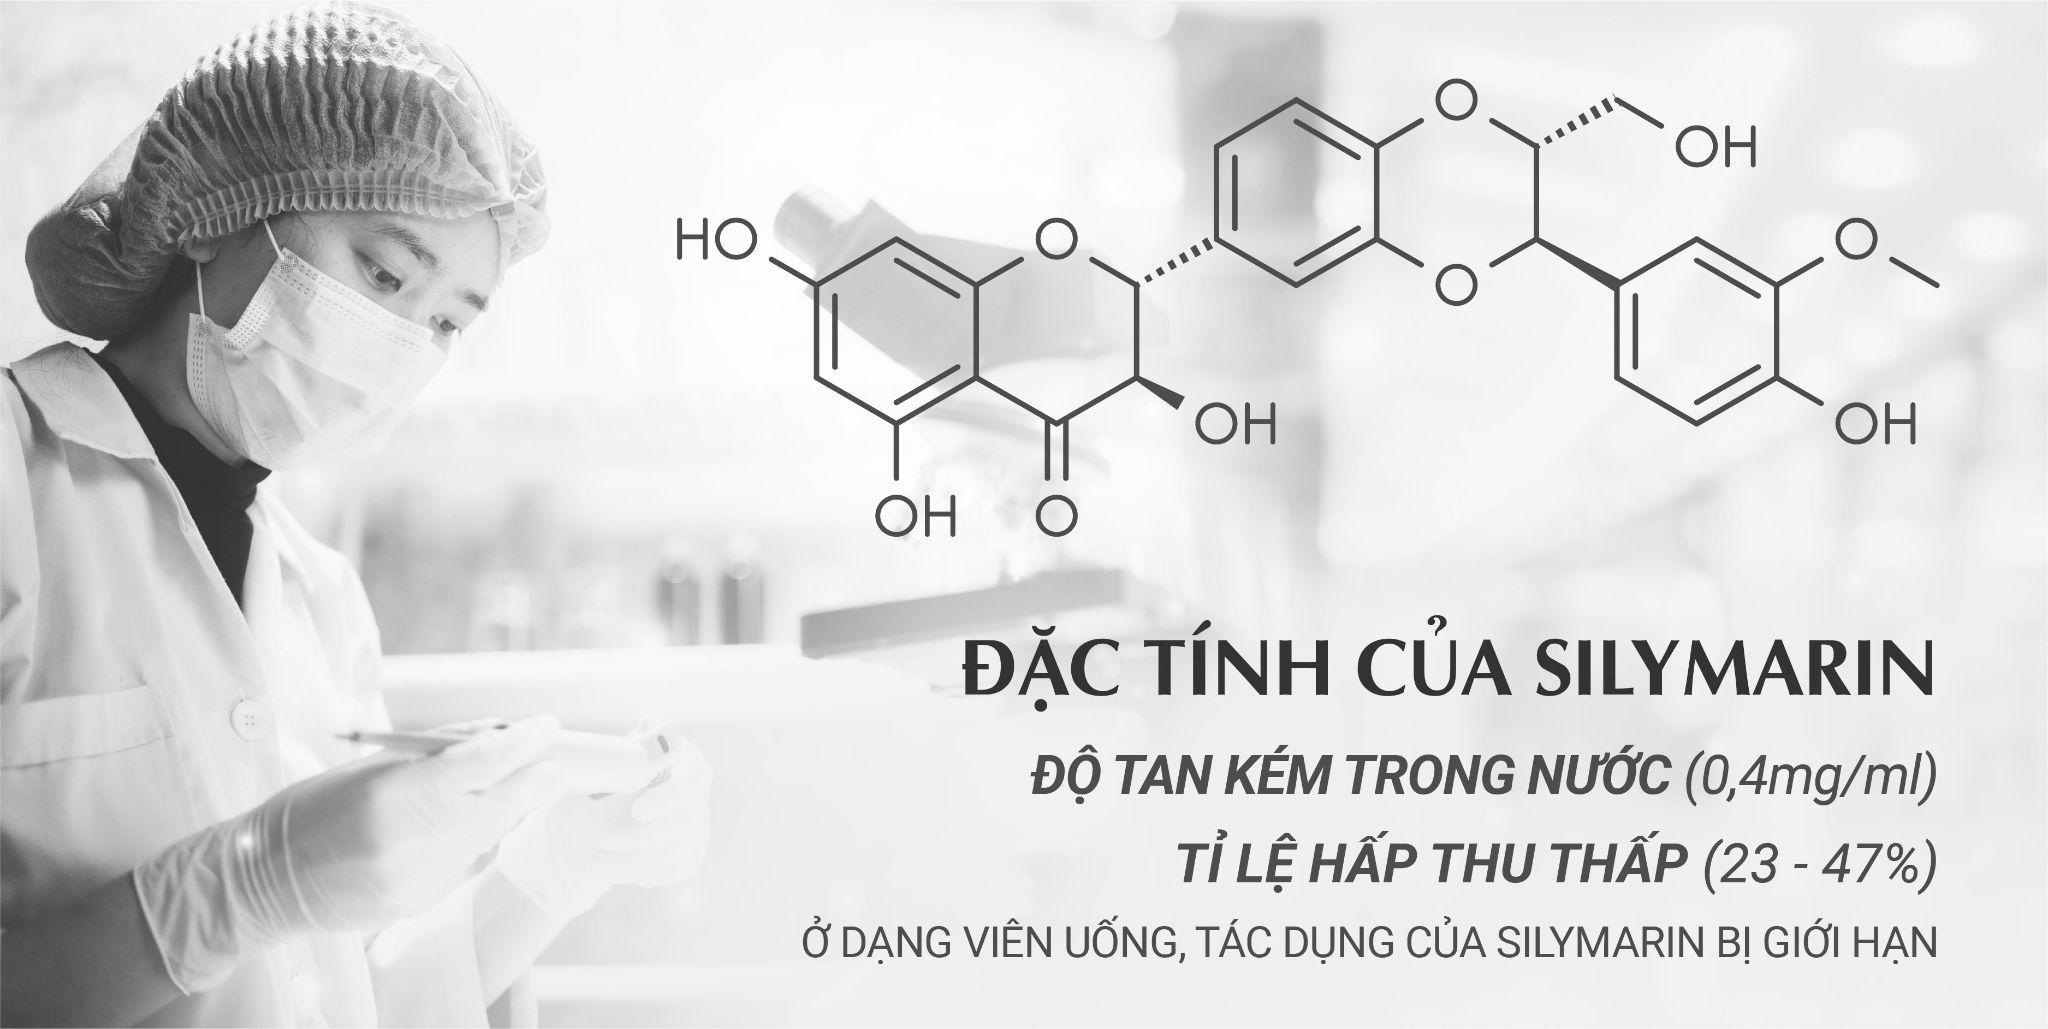 Bào chế thành công Tonic hỗ trợ thải độc gan dễ hấp thu-1